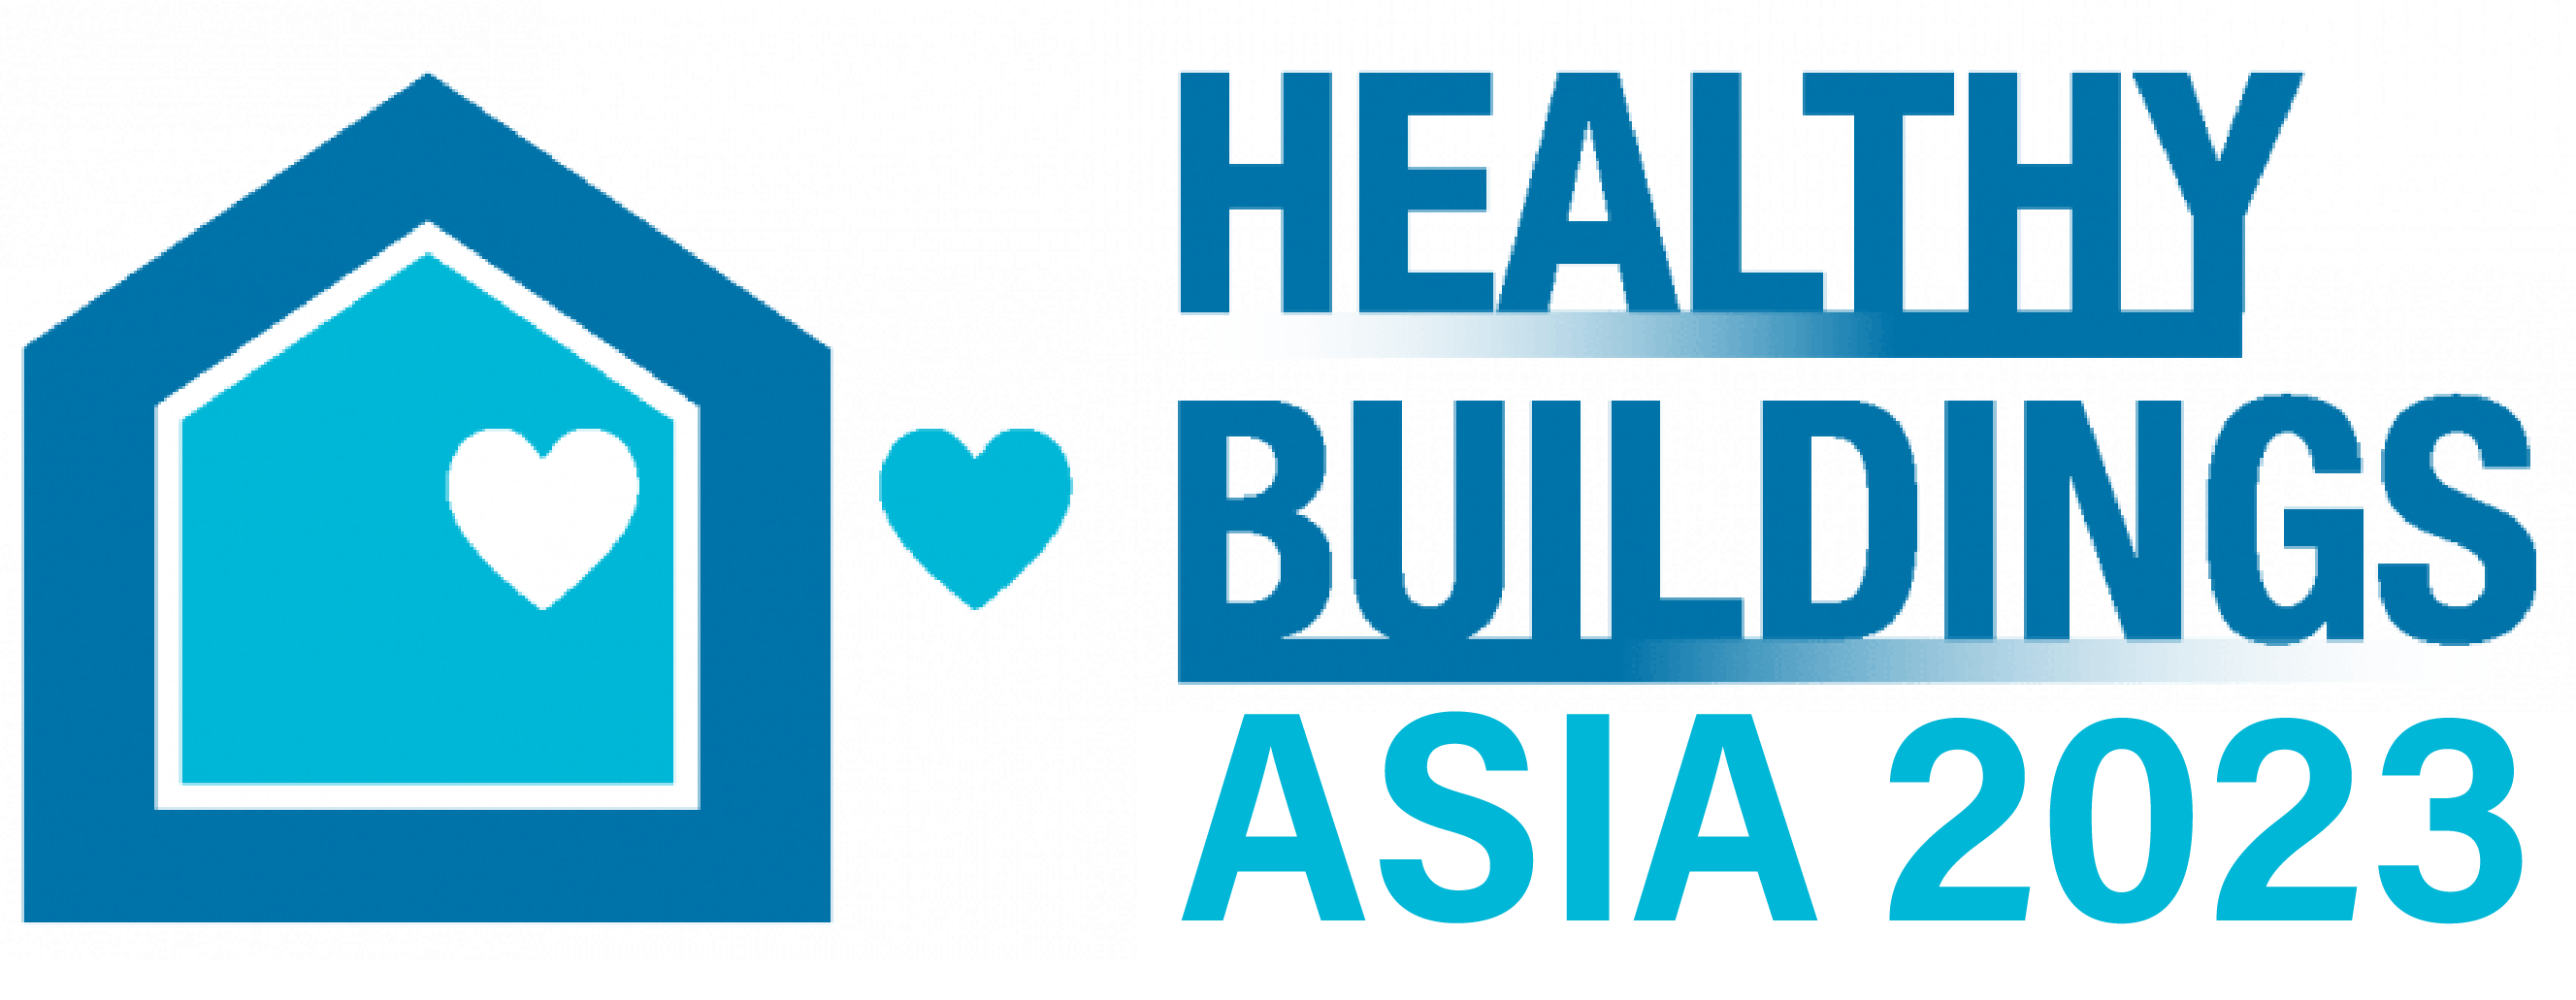 Healthy Buildings Asia 2023 Logo